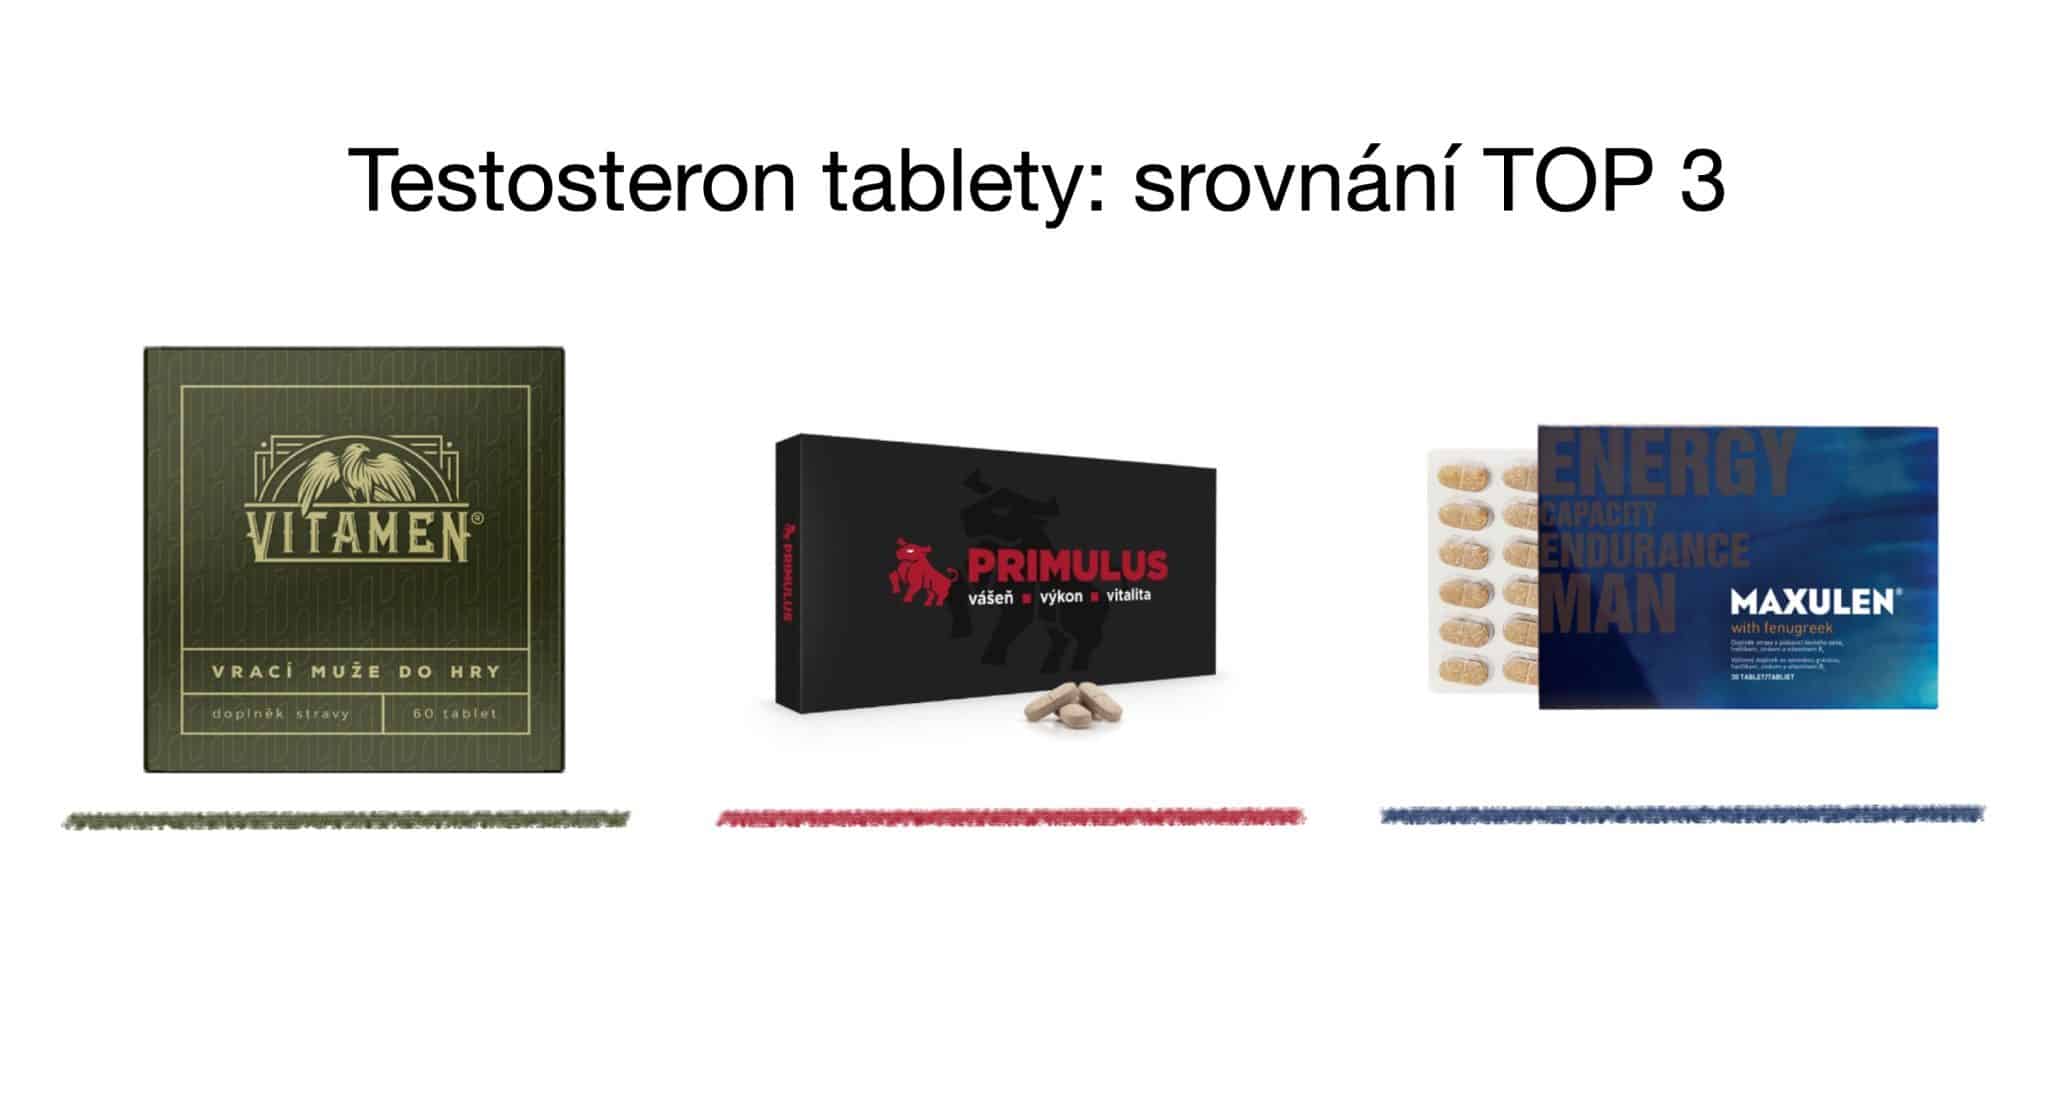 Testosteron tablety TOP 3 srovnání – vitamíny pro muže [recenze] 8